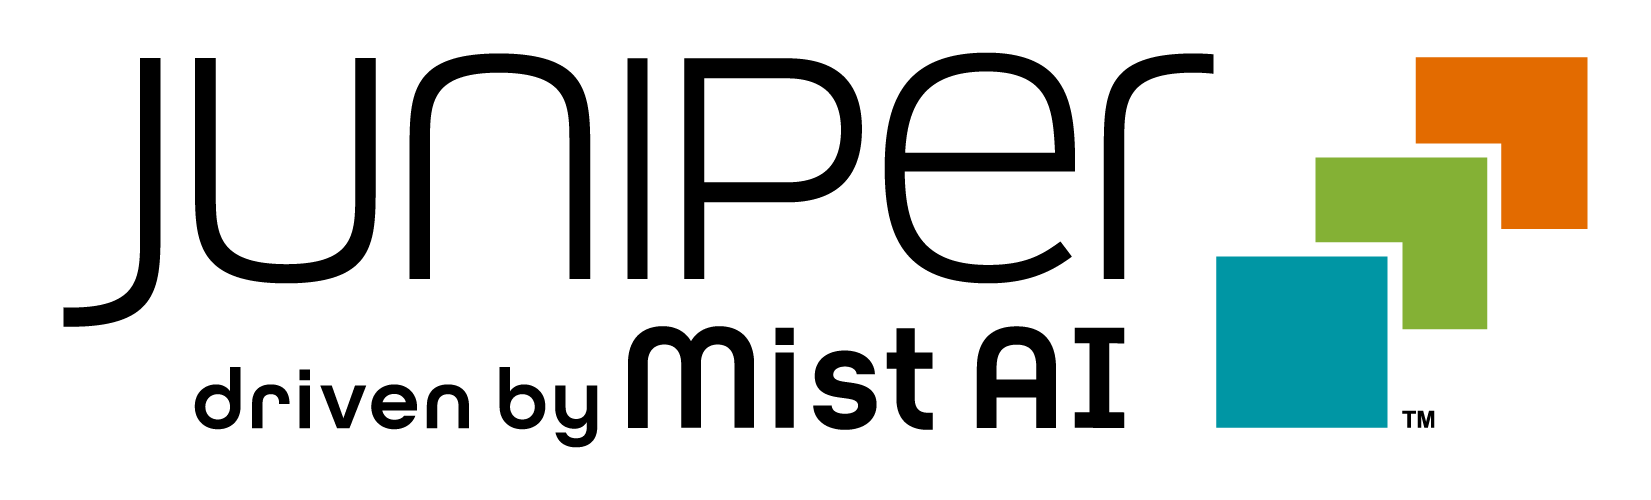 Juniper-Mist-logo.png